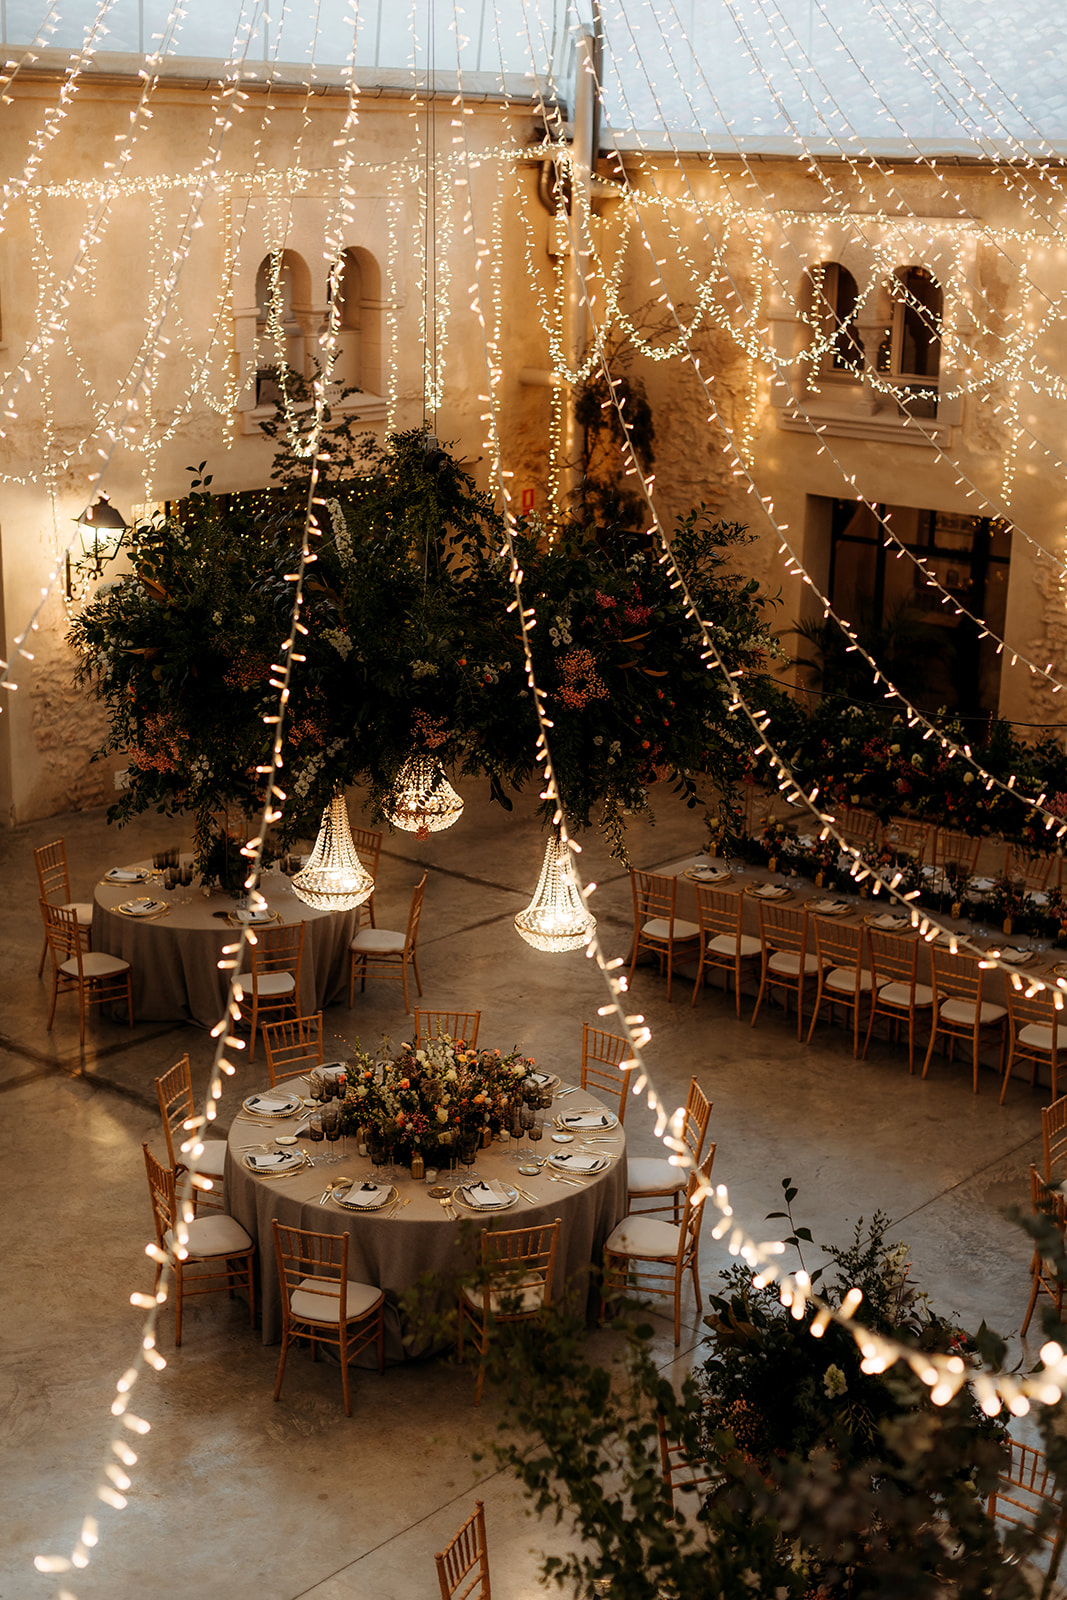 Patio jardín de boda sencillo, elegante y natural con mesas florales y luces colgantes.